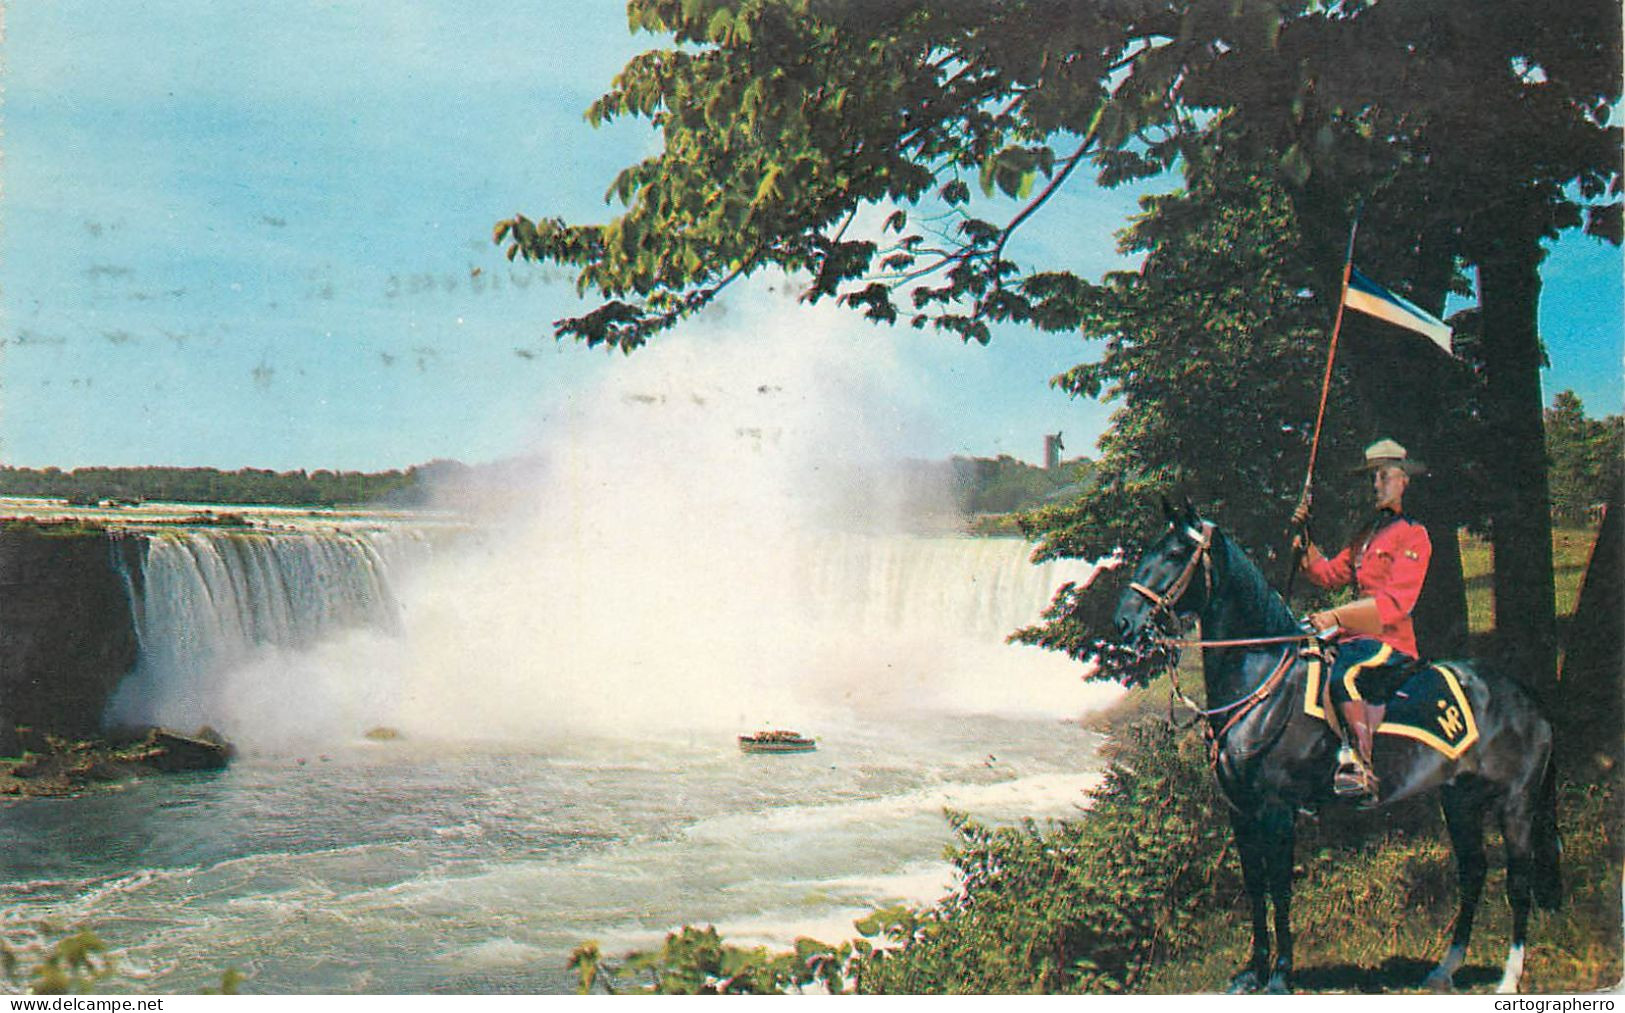 Canada Horseshoe Falls Niagara Falls Ontario Mounted Police Officer - Niagara Falls